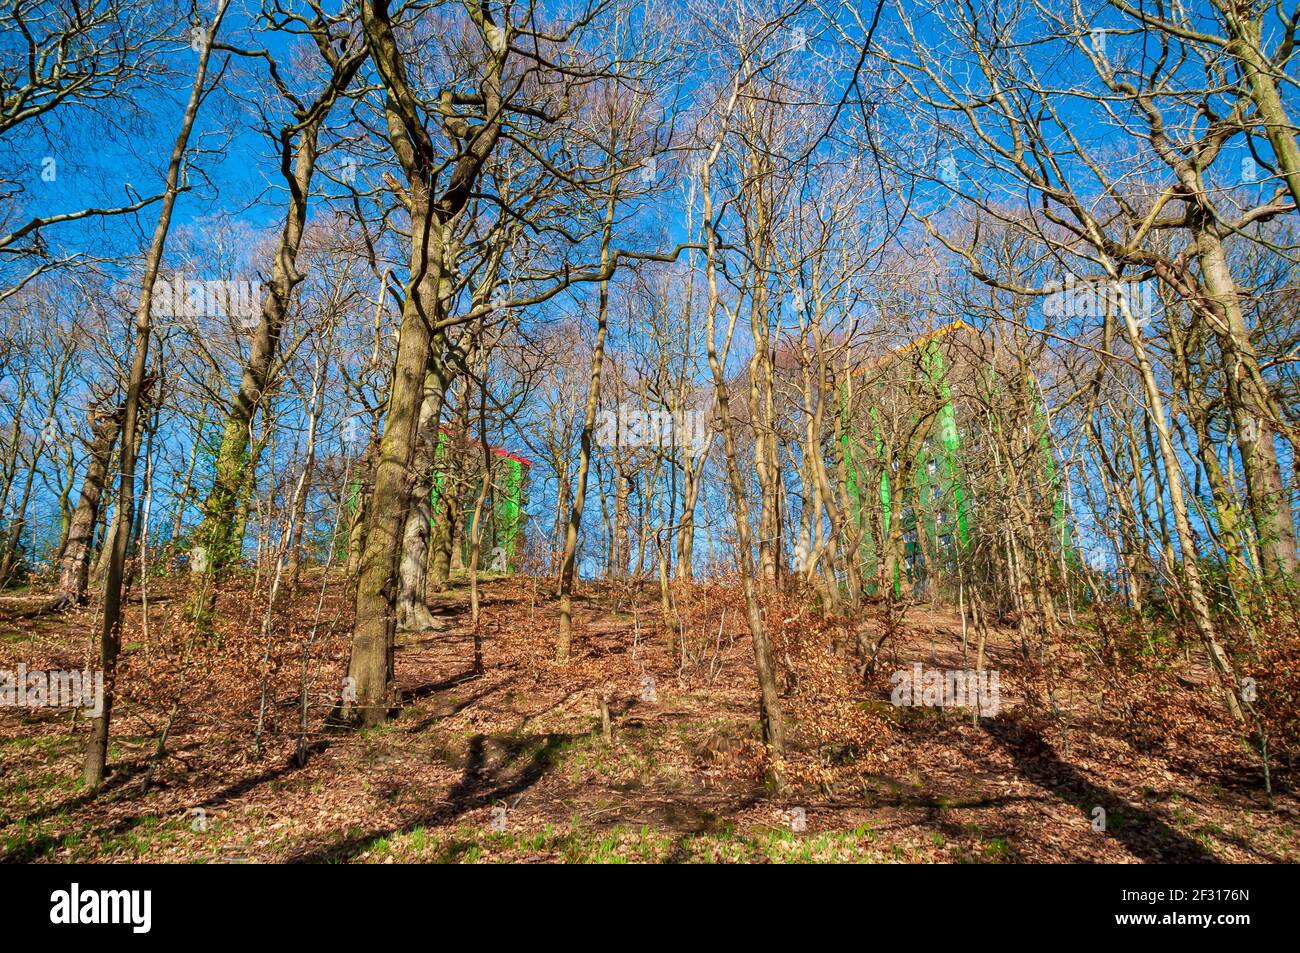 Soleil printanier avec des blocs de tour verte derrière à Hang Bank Wood, vallée de Gleadless, Sheffield. Banque D'Images